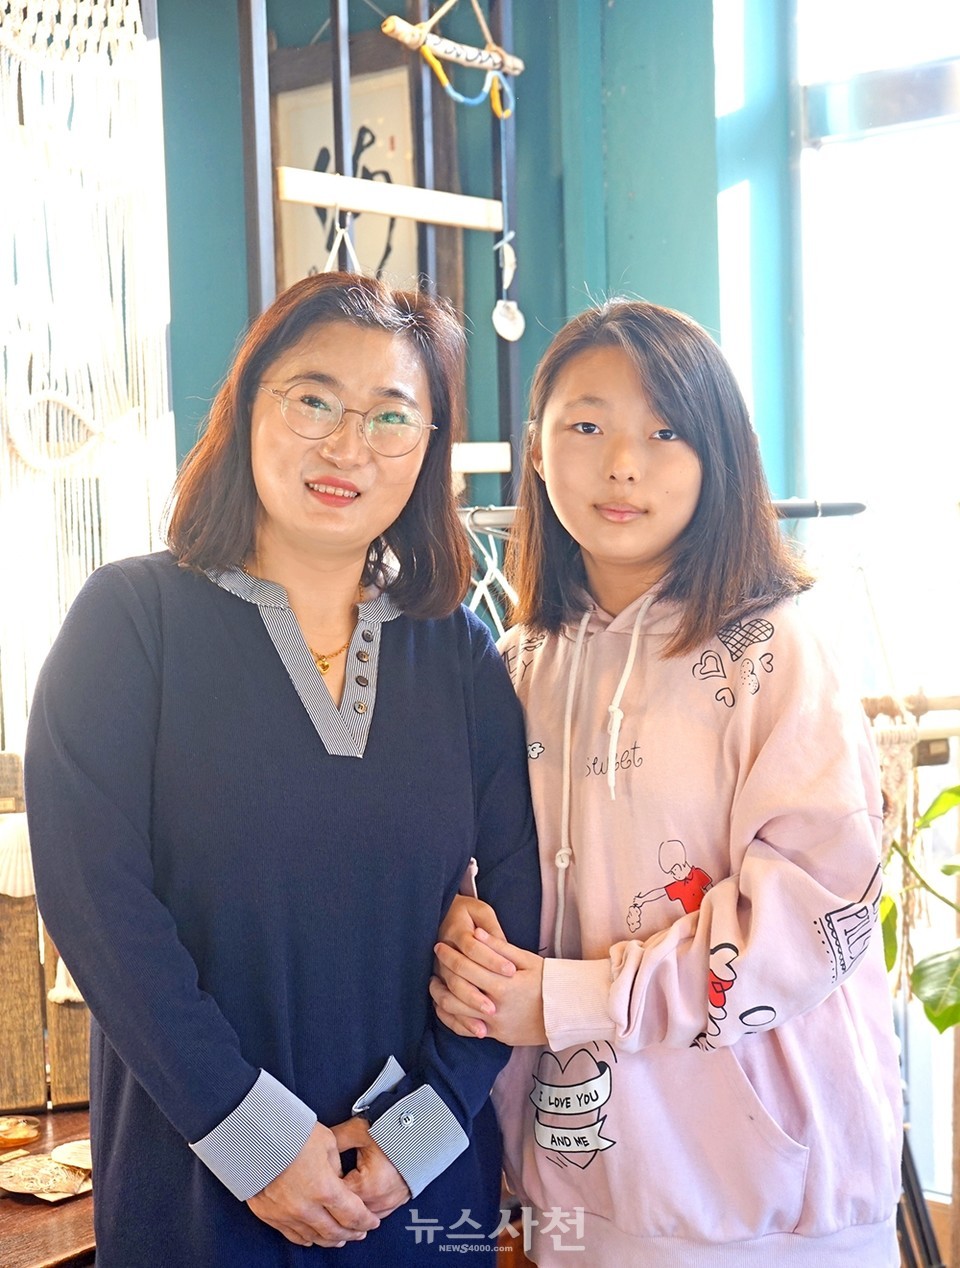 12월 17일 '바다가분다' 공방에서 만난 김희주, 박은성 모녀.